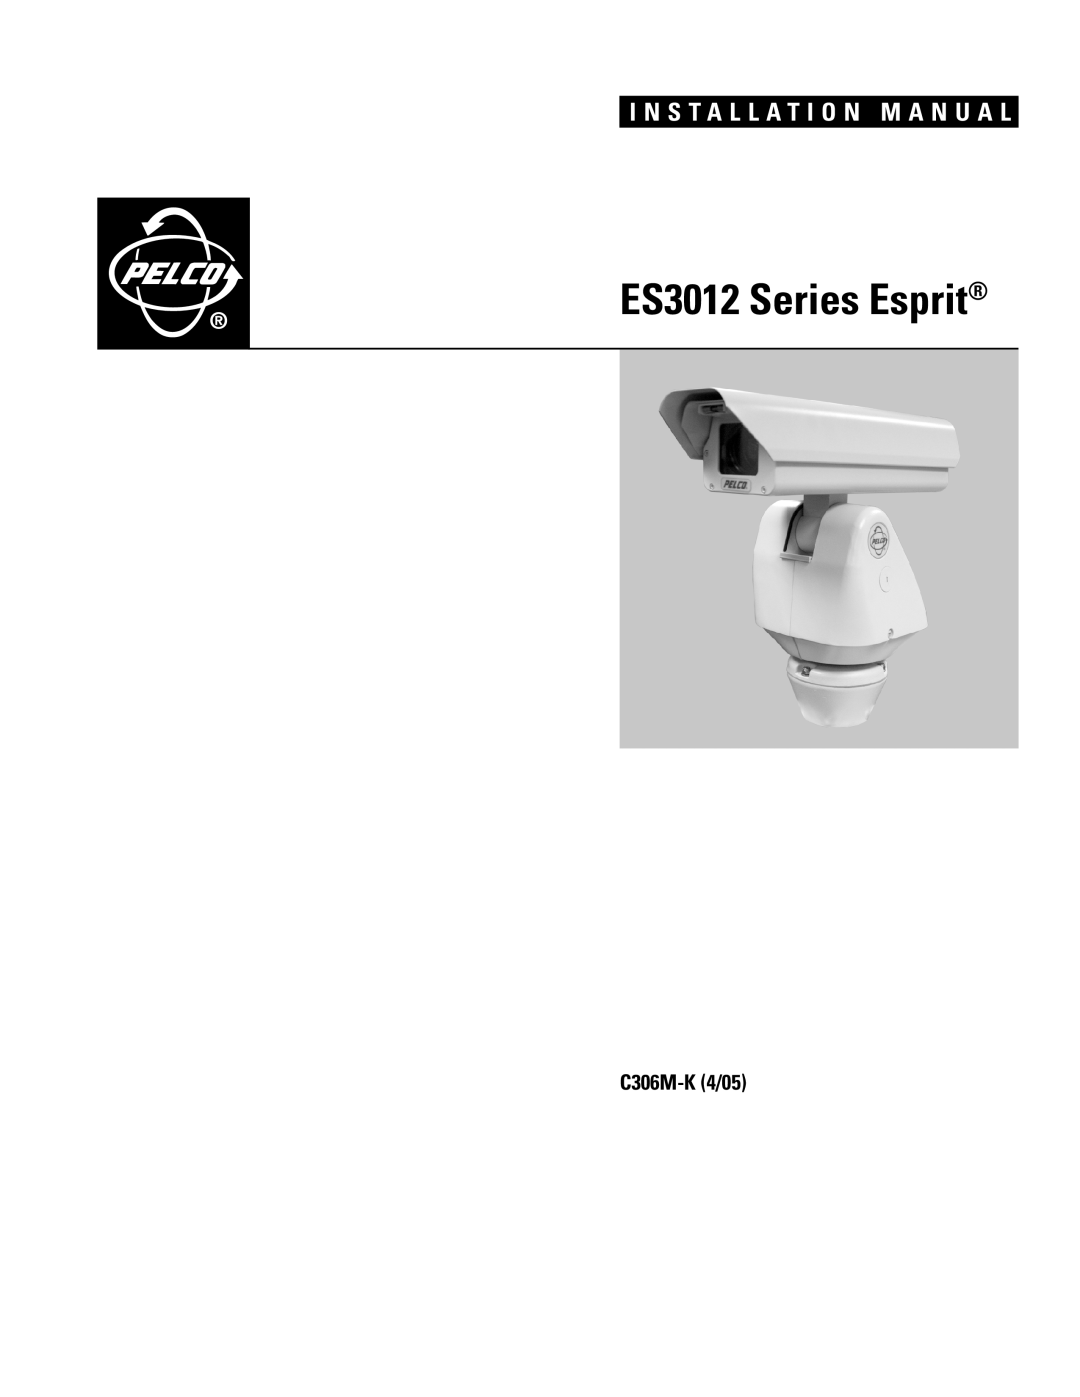 Pelco es3012 installation manual ES3012 Series Esprit, I N S T A L L A T I O N M A N U A L, C306M-K4/05 